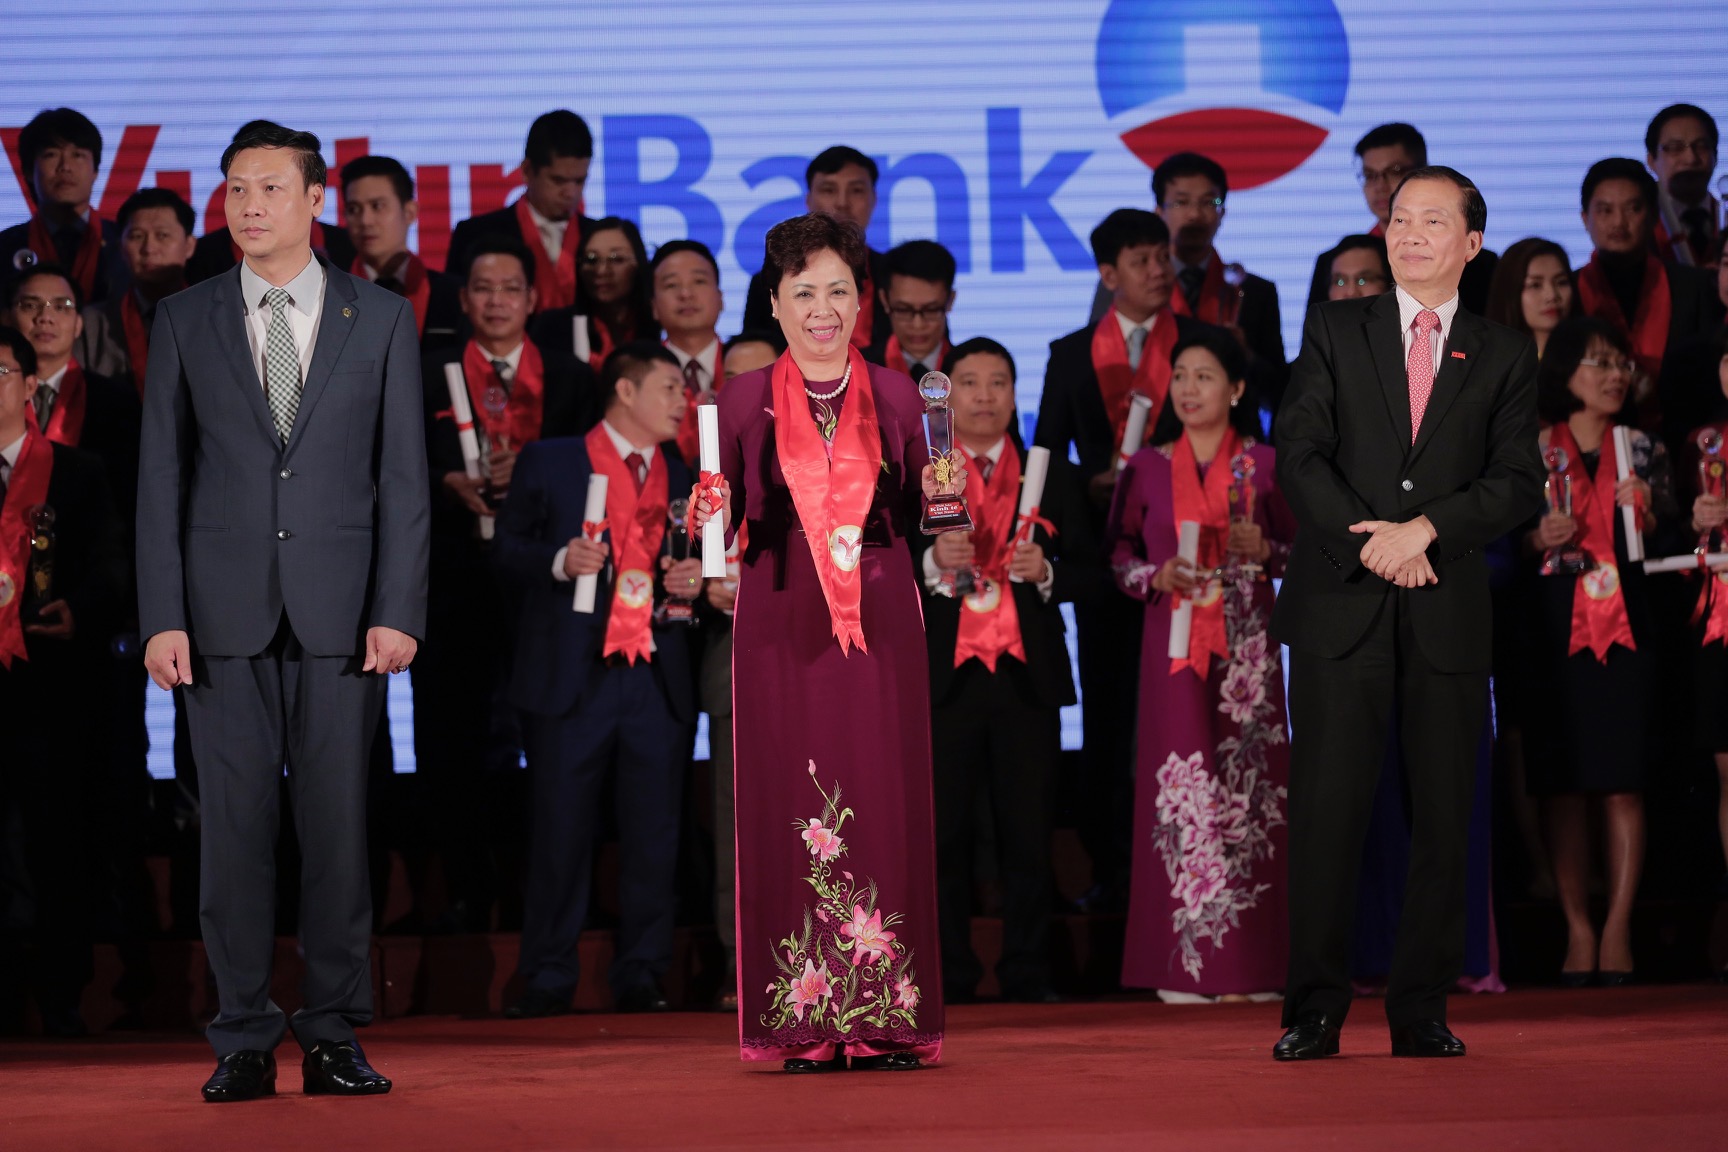 VietinBank - Top dẫn đầu Thương hiệu mạnh Việt Nam 13 năm liên tiếp